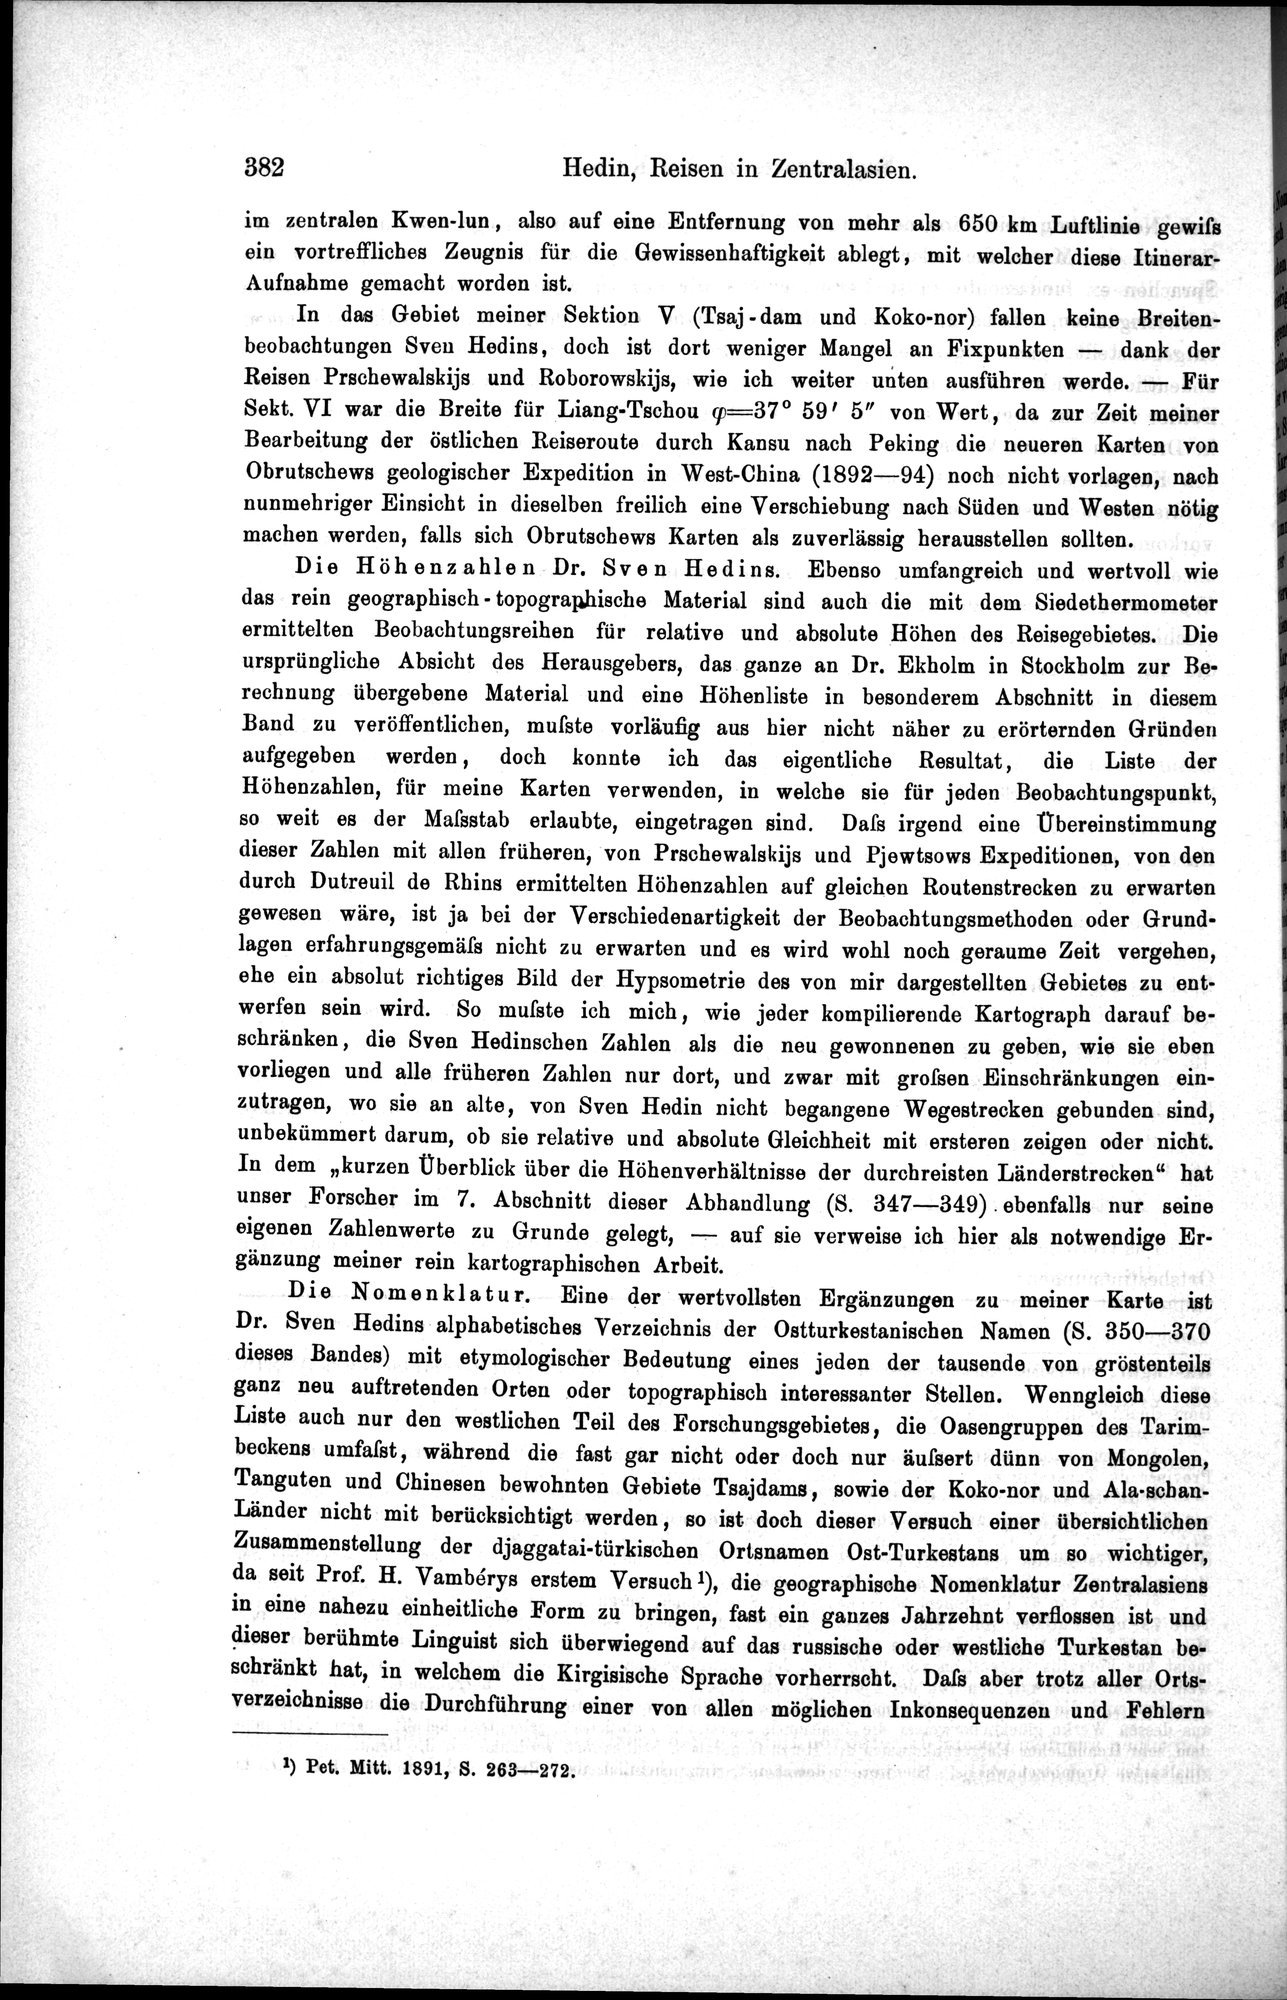 Die Geographische-Wissenschaftlichen Ergebnisse meiner Reisen in Zentralasien, 1894-1897 : vol.1 / Page 394 (Grayscale High Resolution Image)